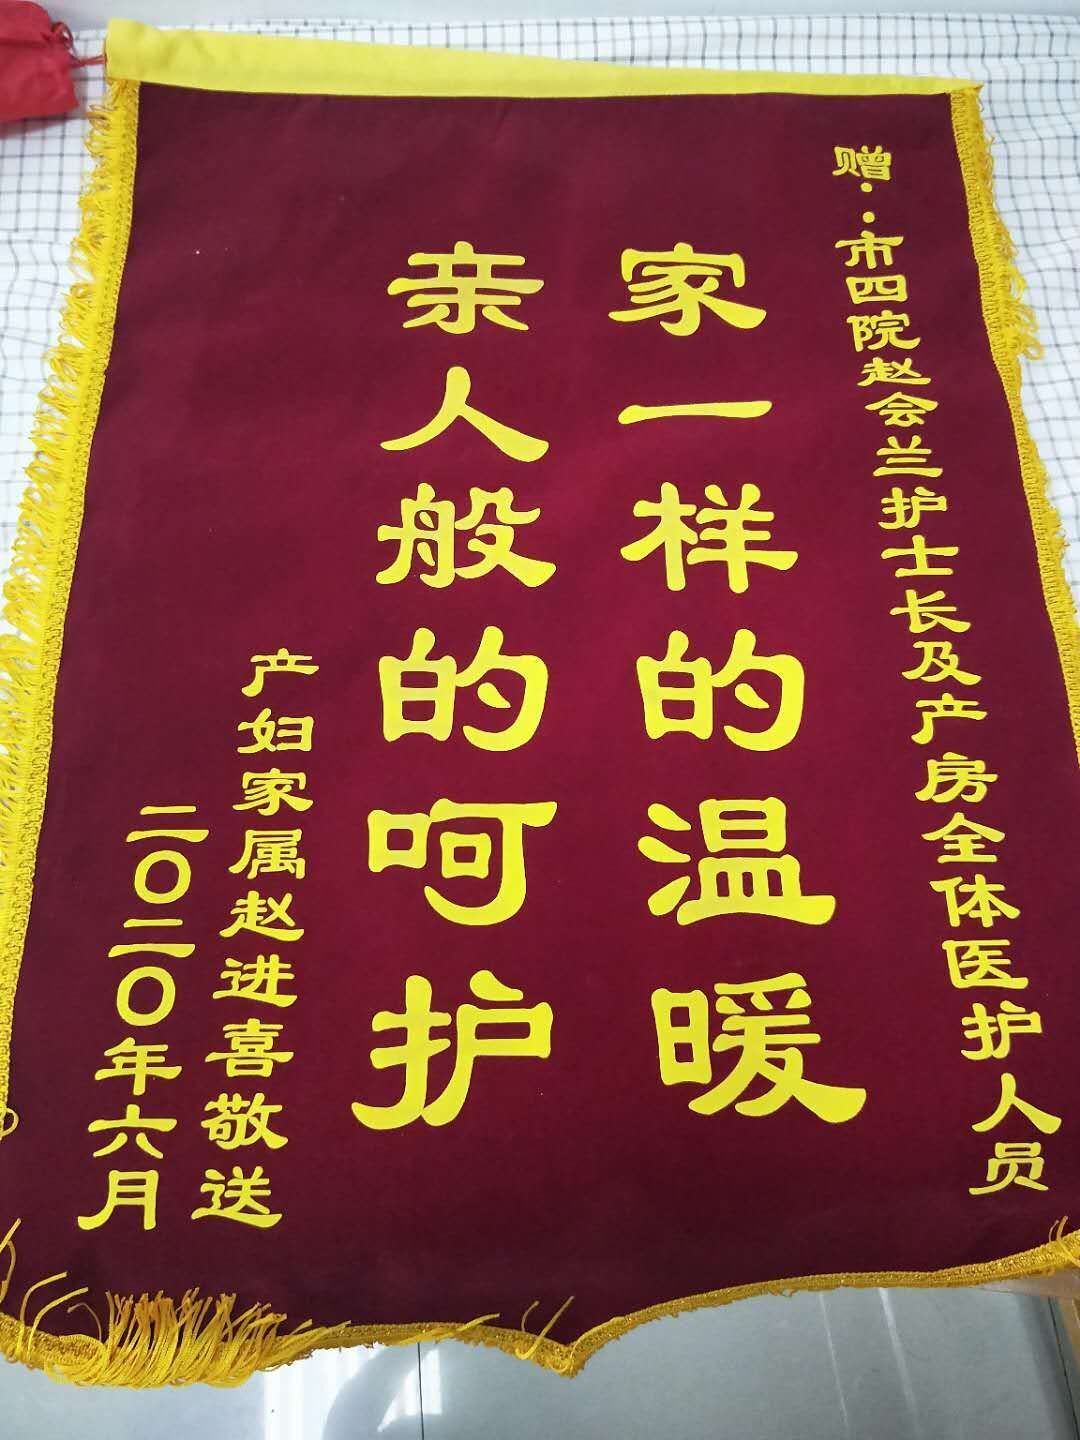 高新院区产房赵会兰护士长及产房全体医护人员获赠锦旗：“家一样的温暖，亲人般的呵护”